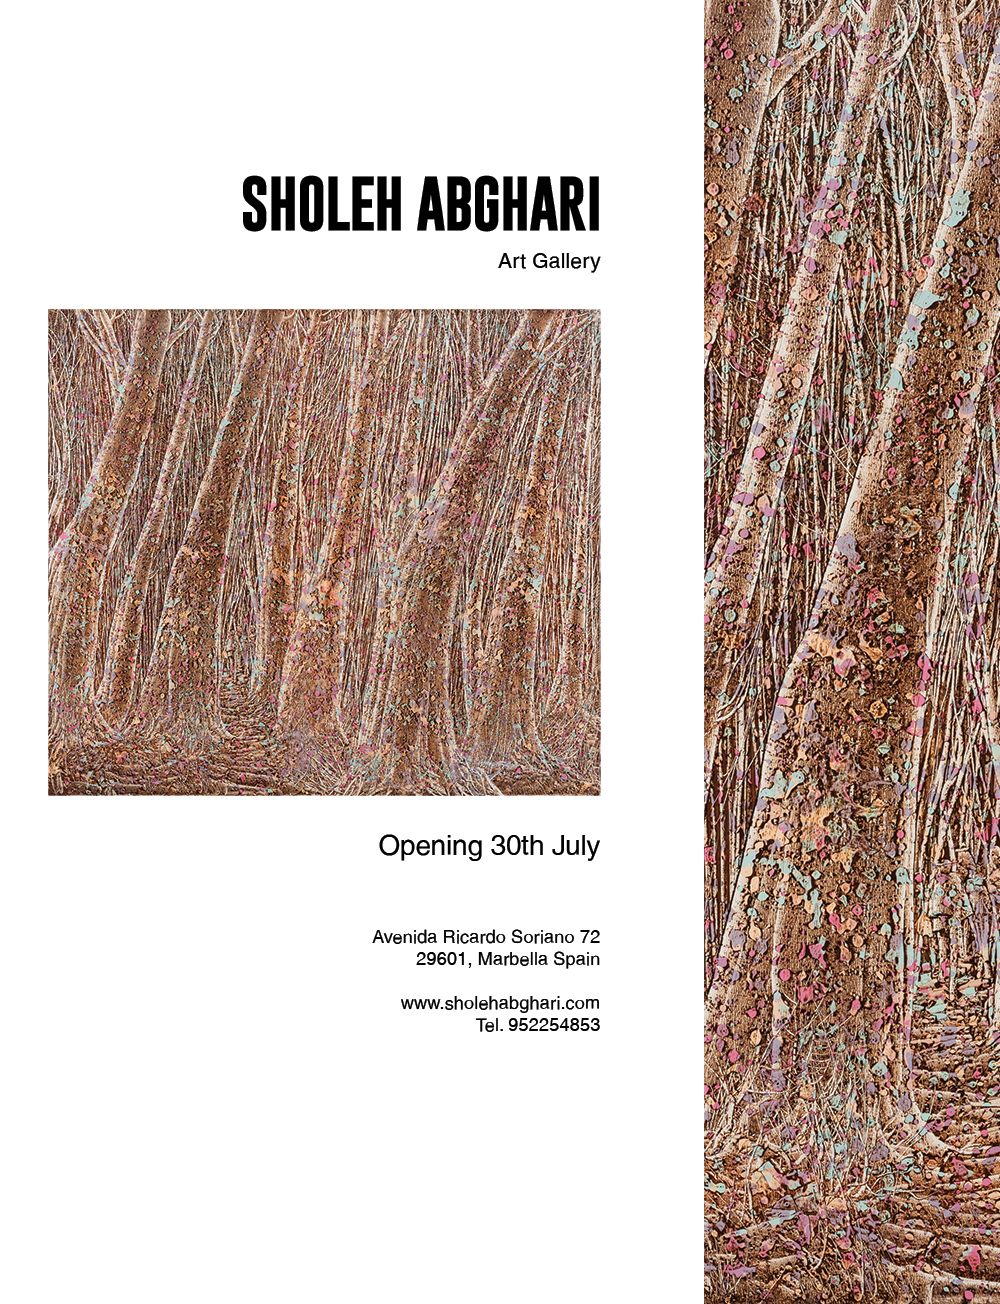 Magazine adverts sholeh-abghari-art gallery marbella iranian contemporary art